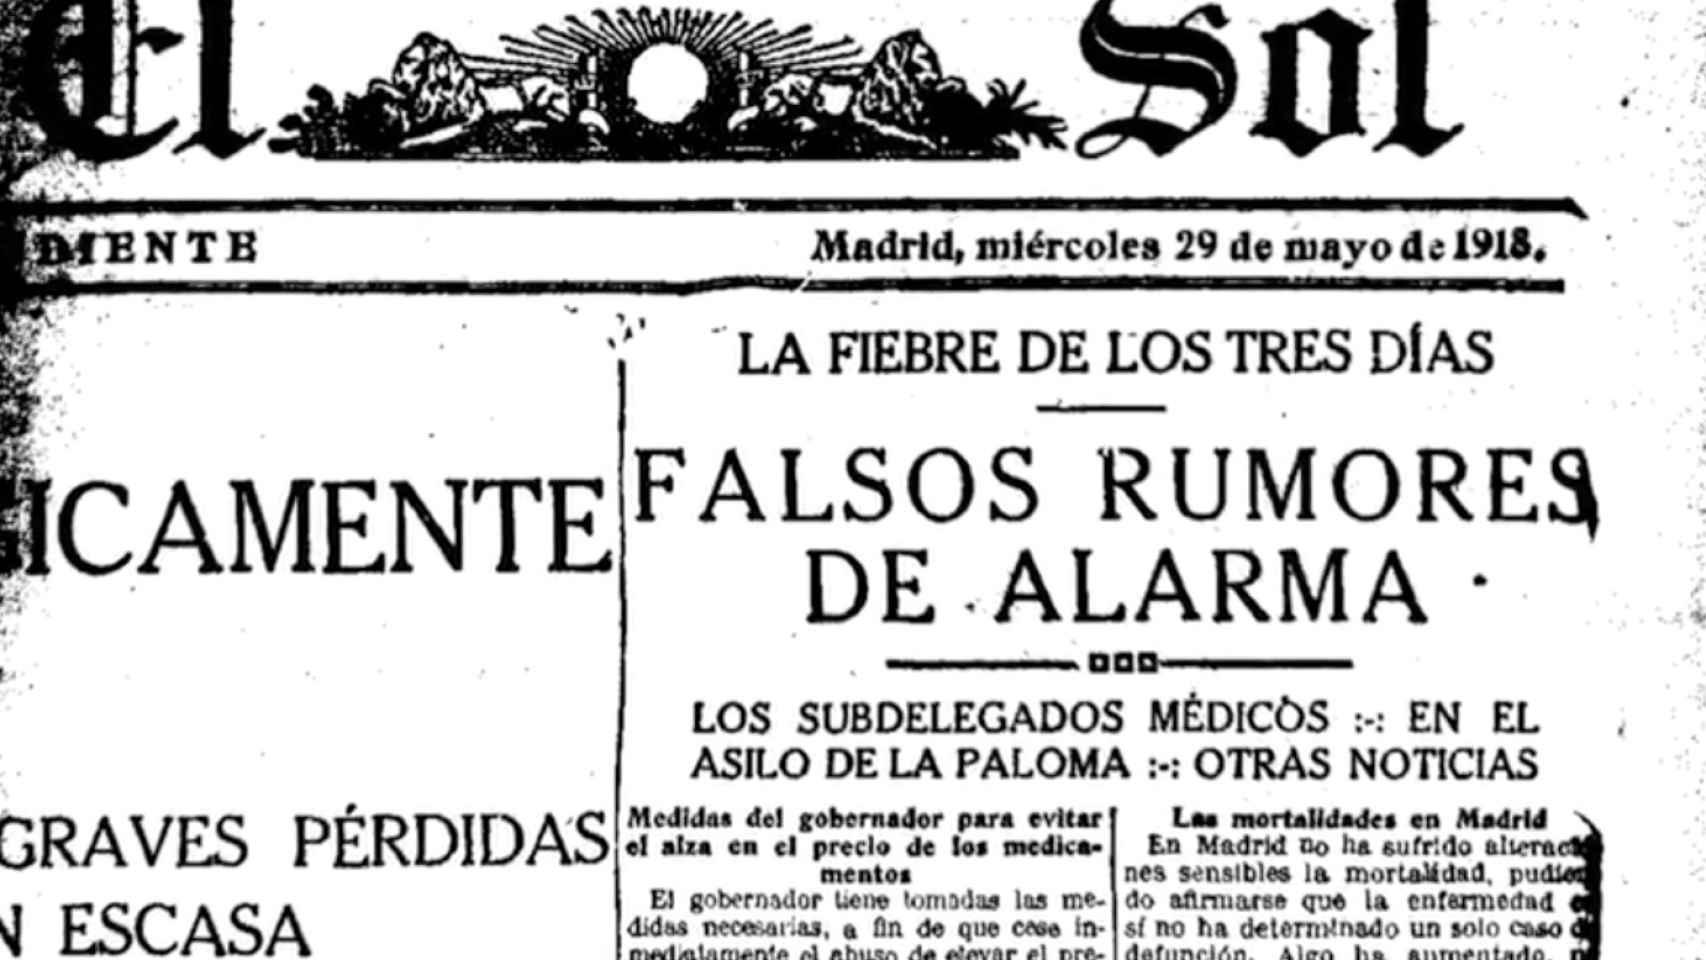 Portada de 'El Sol' durante la pandemia de la gripe española.